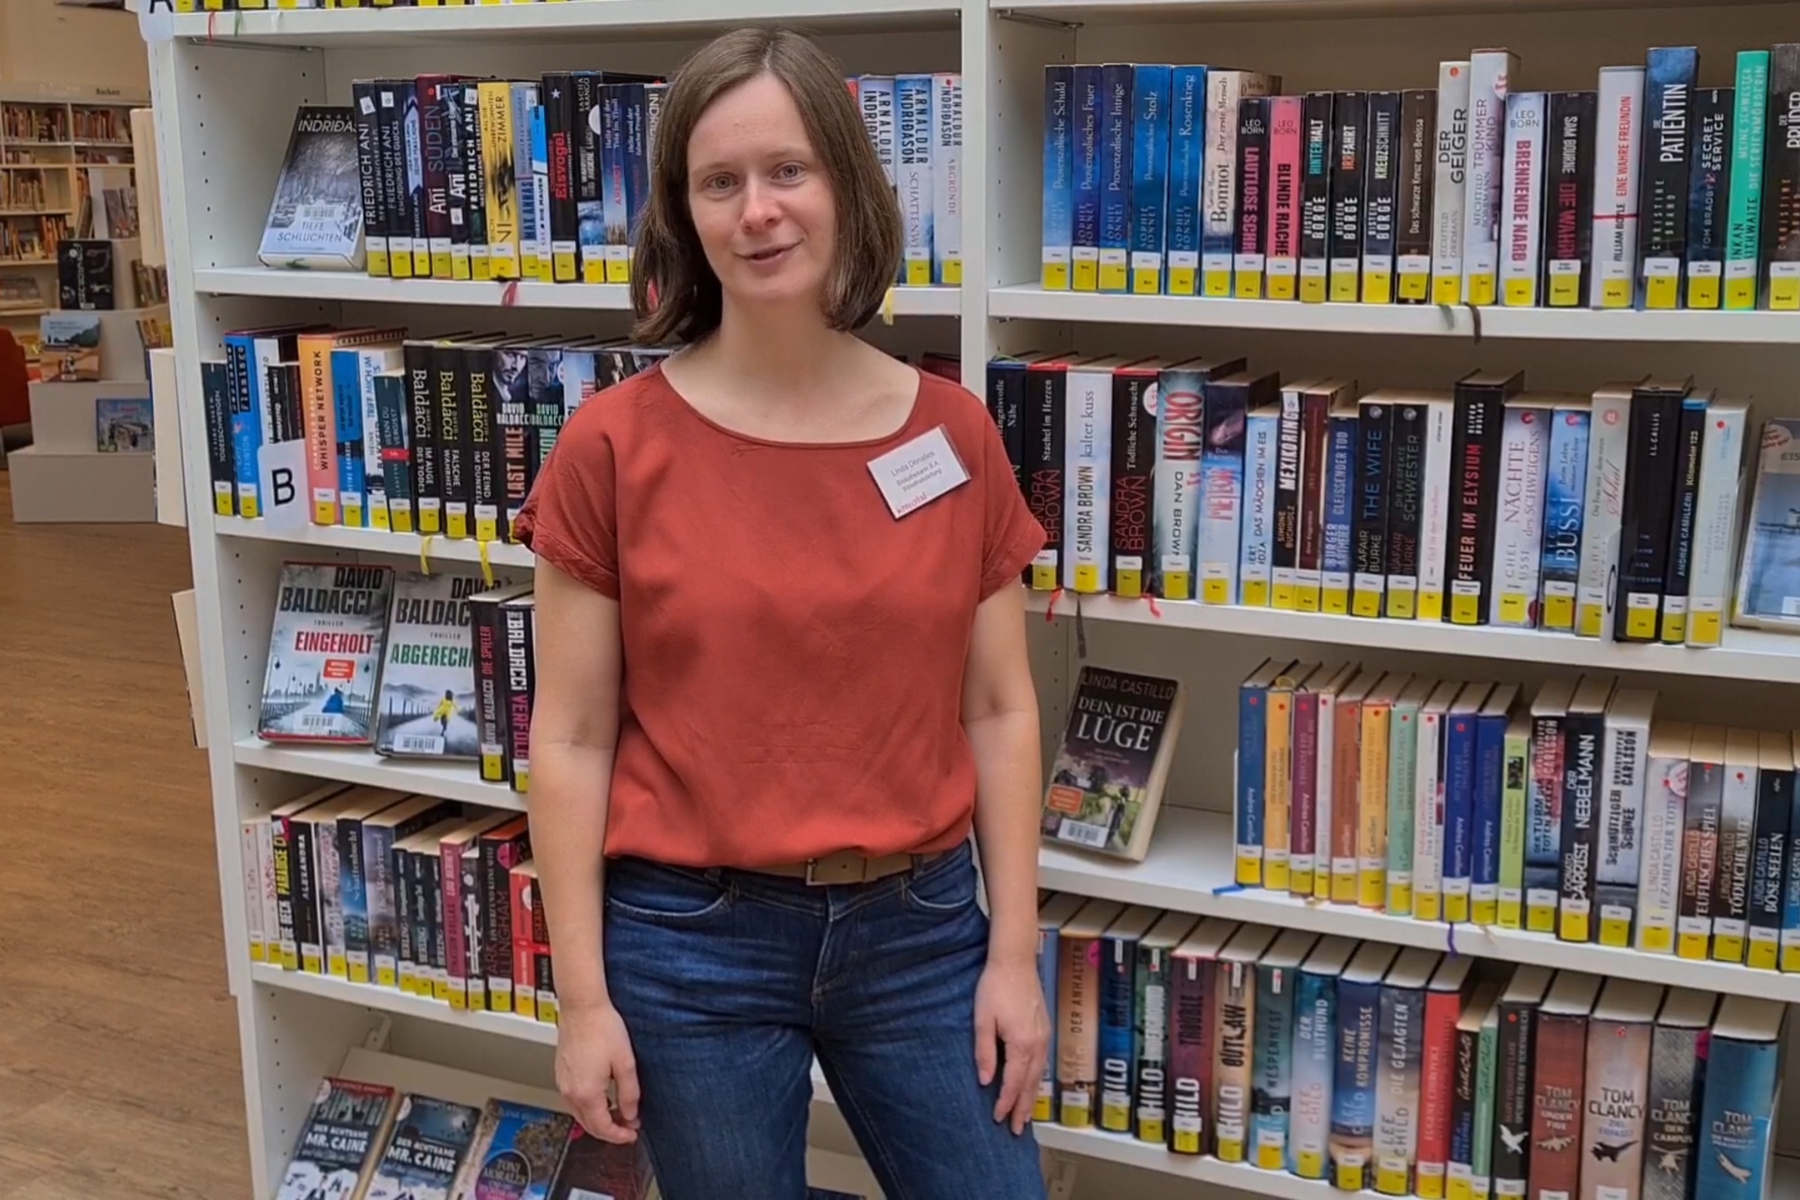 Bibliothekarin in Jeans und rotem Hemd steht vor einem bunten Bücherregal.